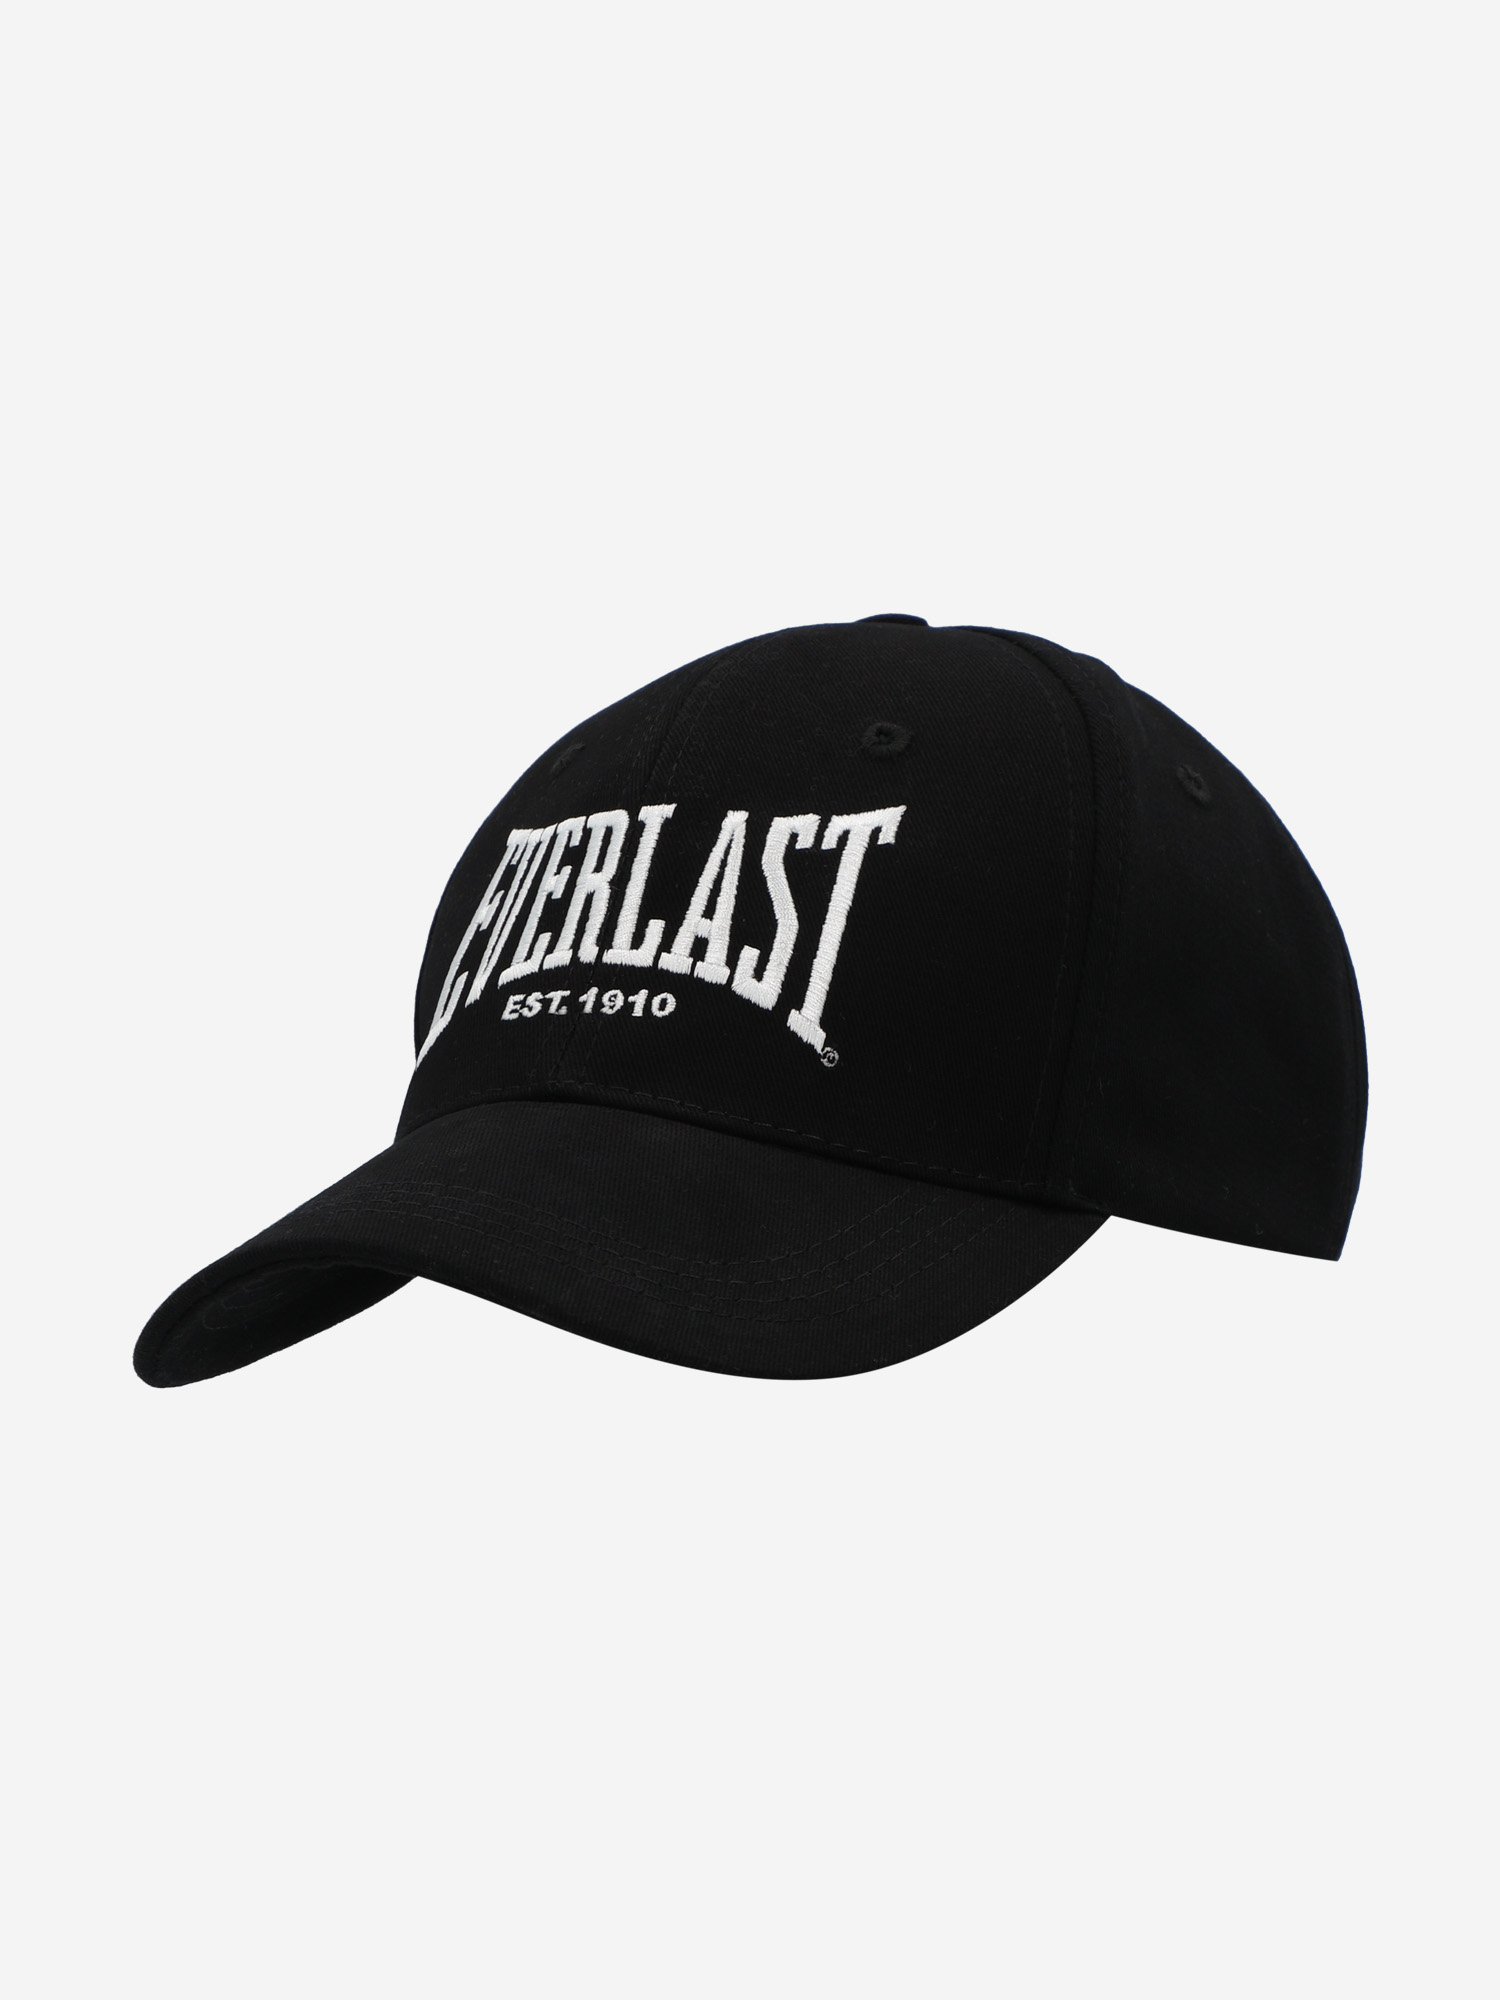 Бейсболка Everlast Classic 1910, Черный шапка everlast wagner light серый